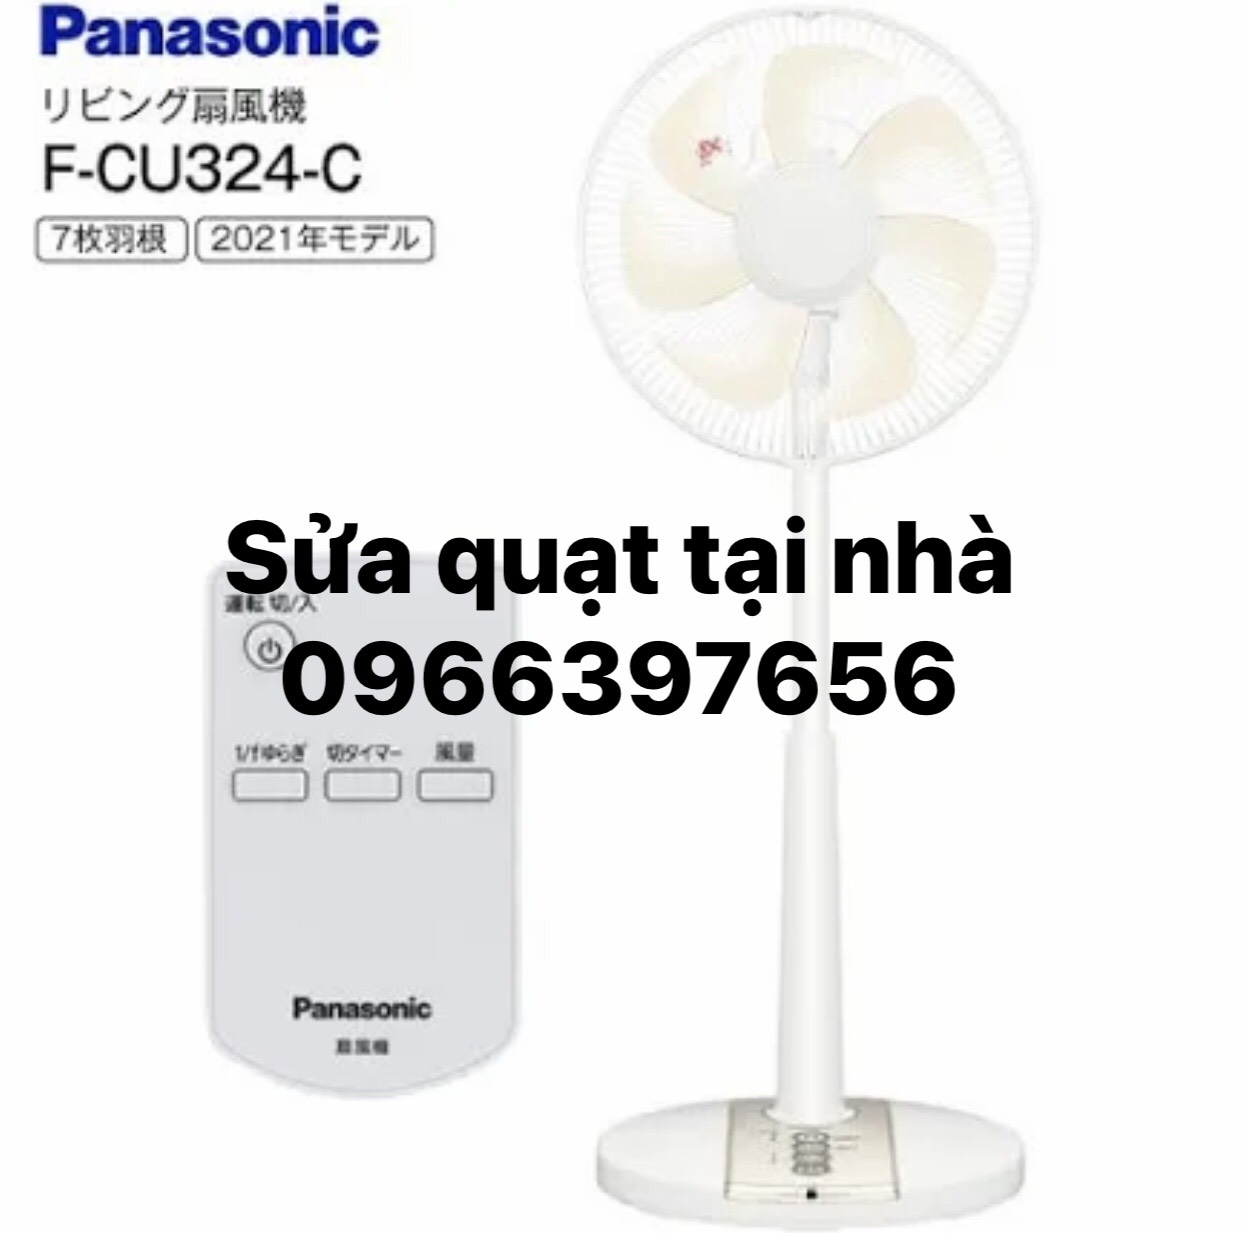 Sửa chữa quạt Panasonic tại nhà 0966397656